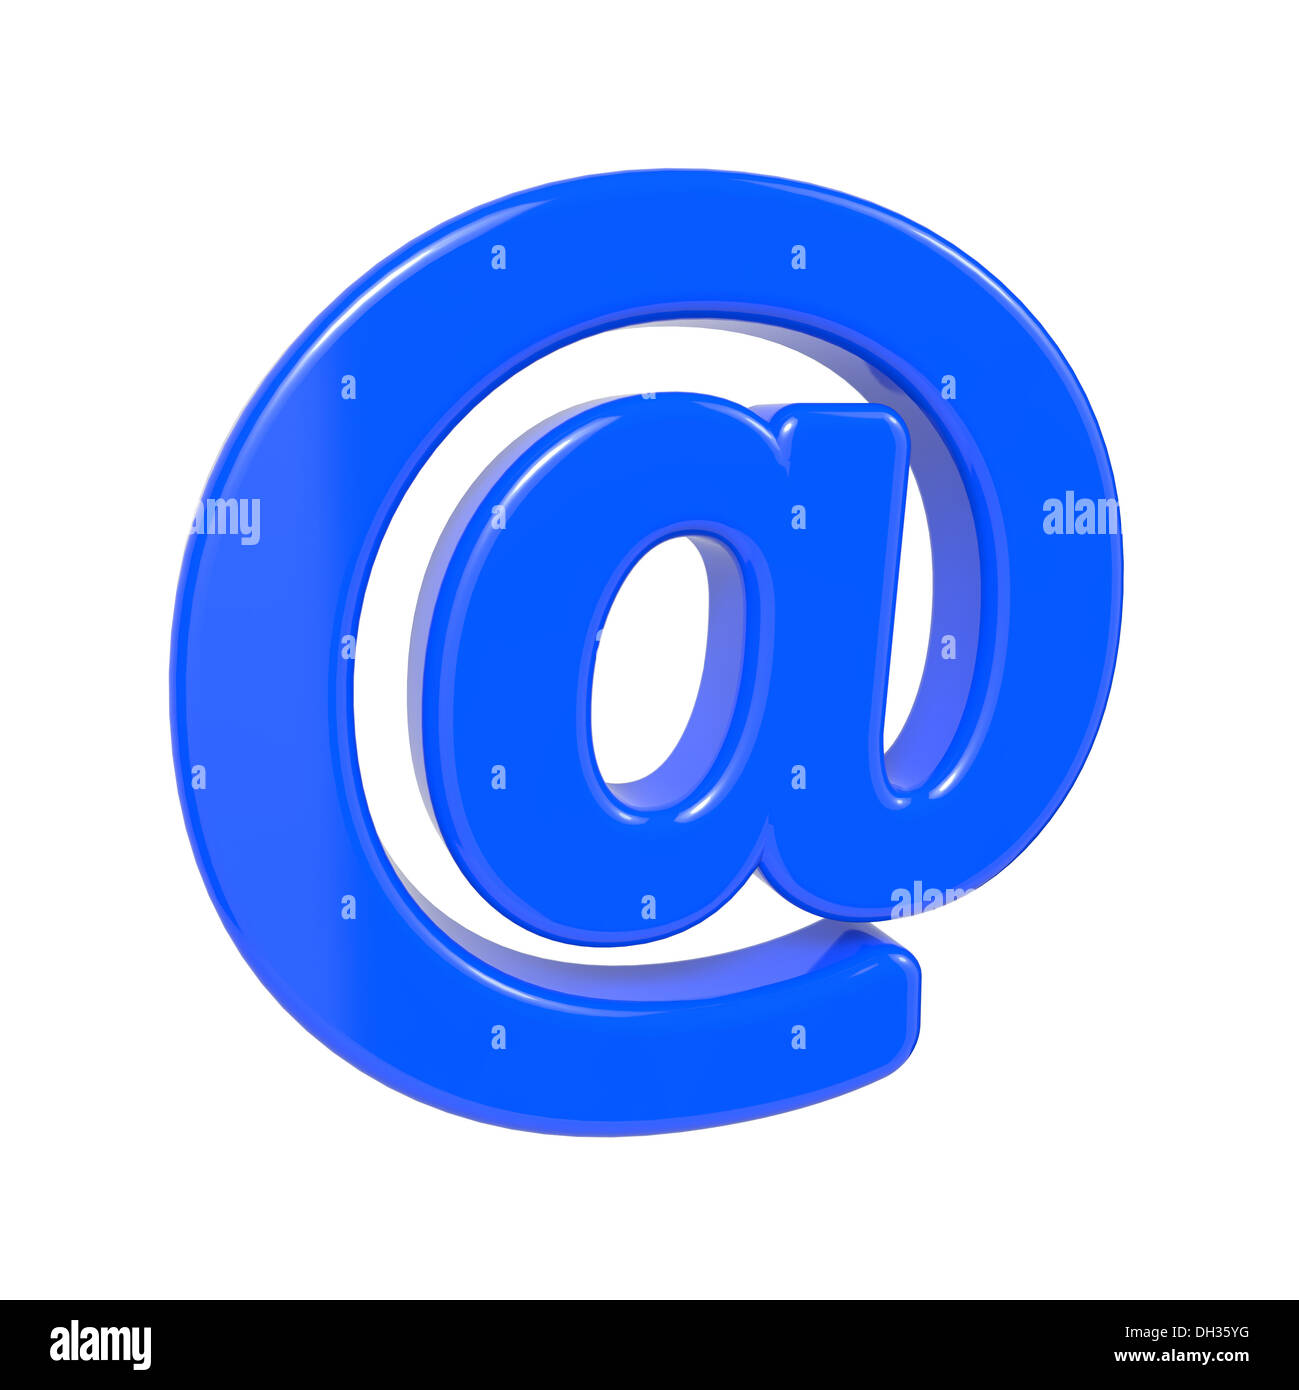 E-mail Concept. Stock Photo